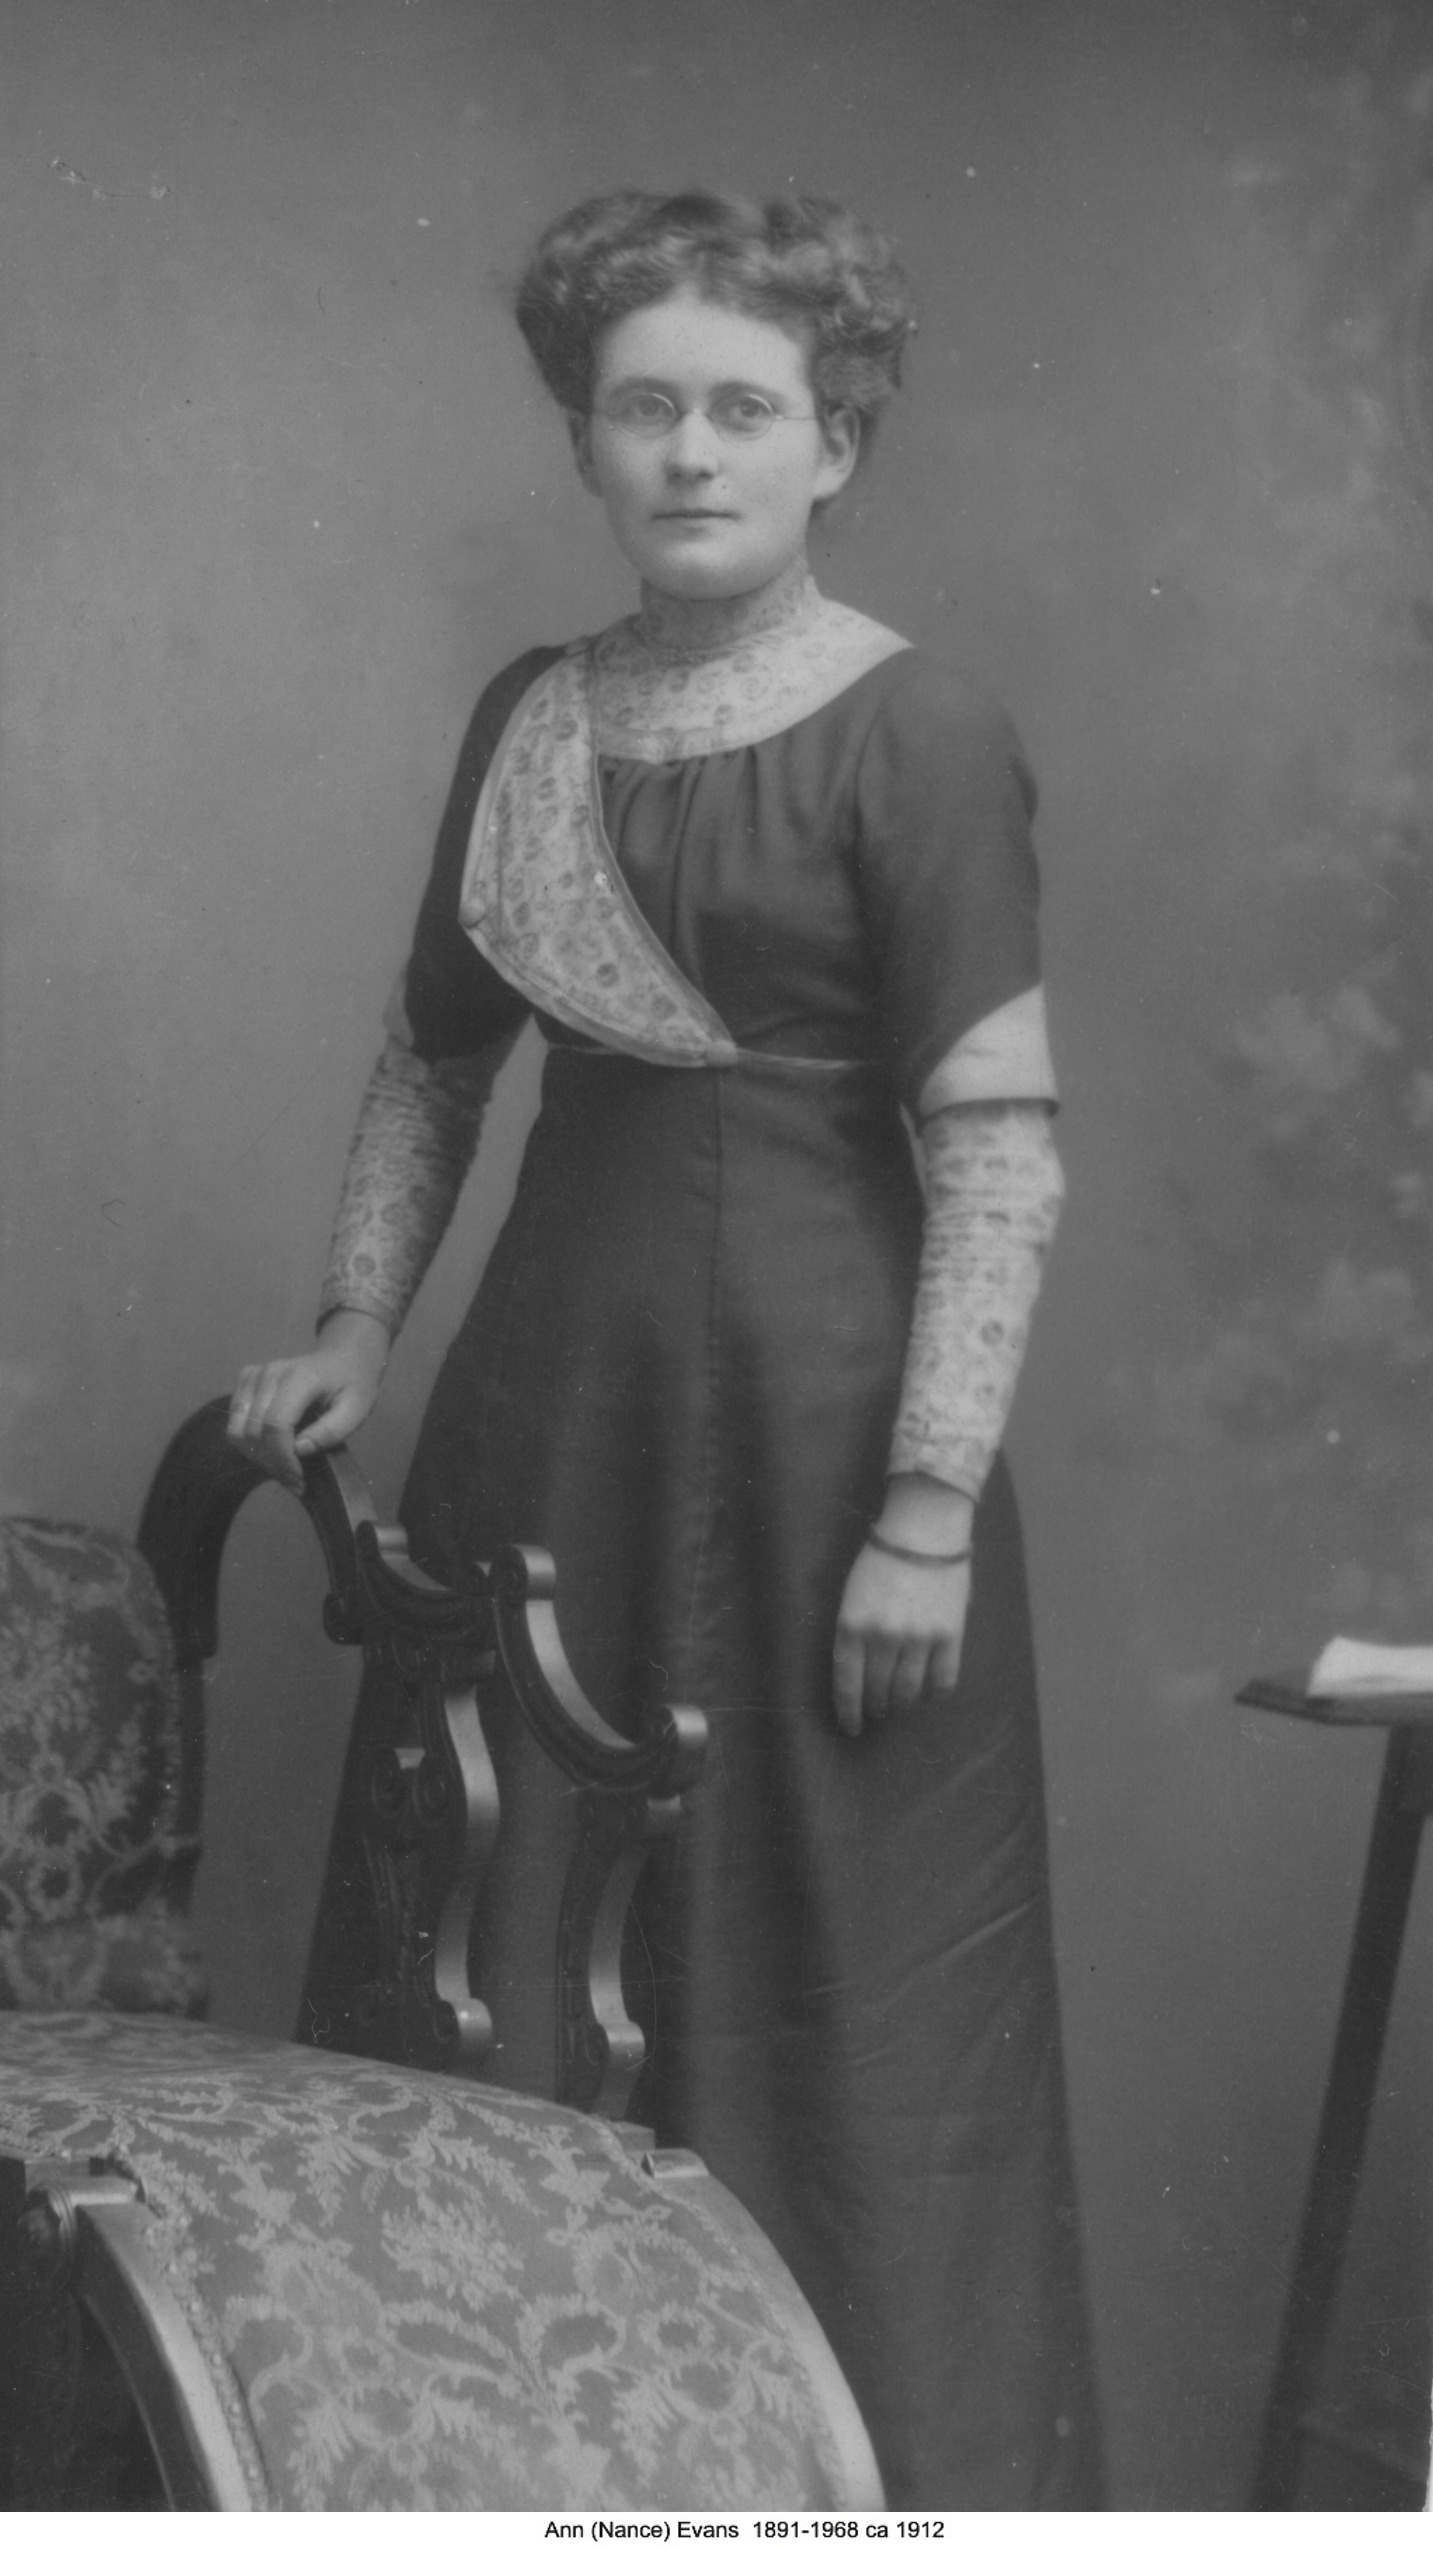 Ann Evans ca 1912